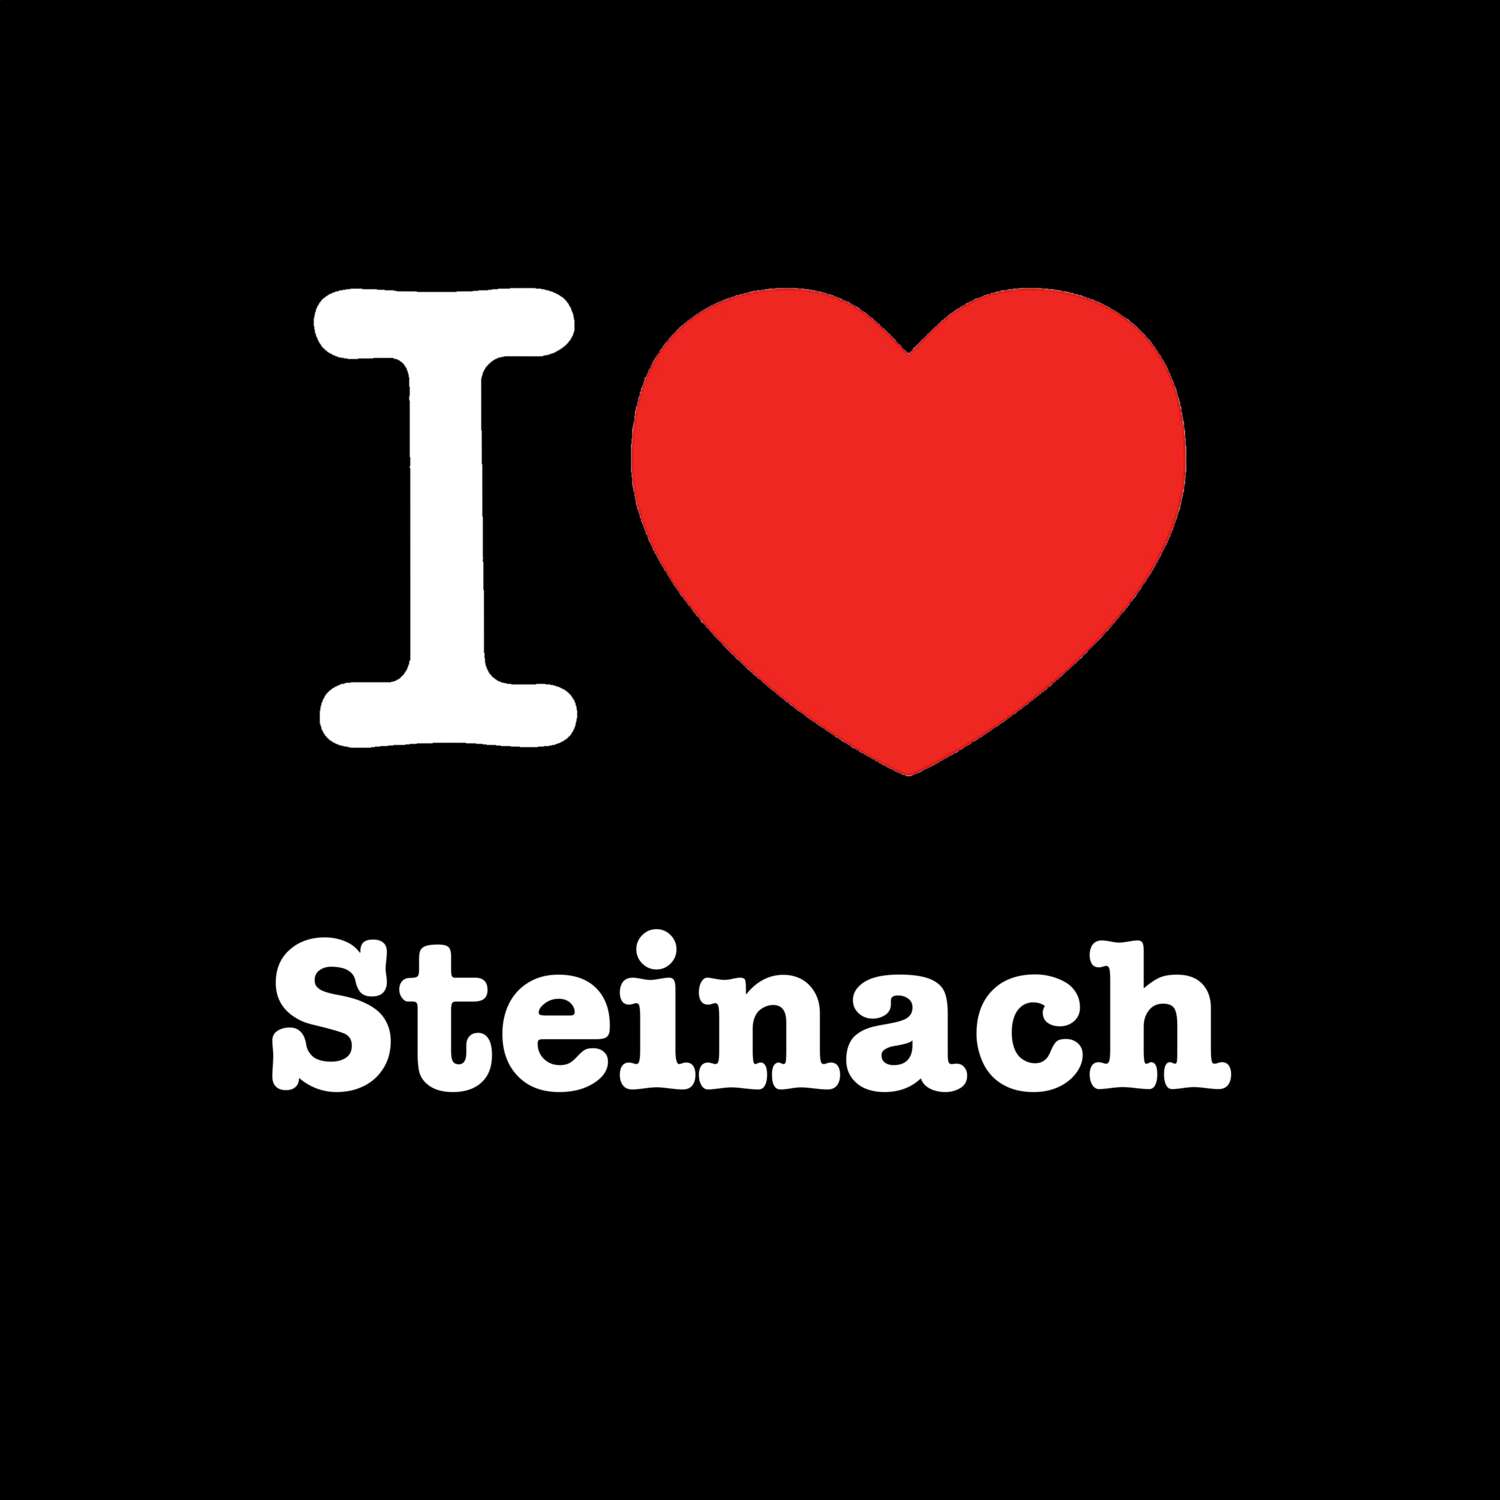 Steinach T-Shirt »I love«